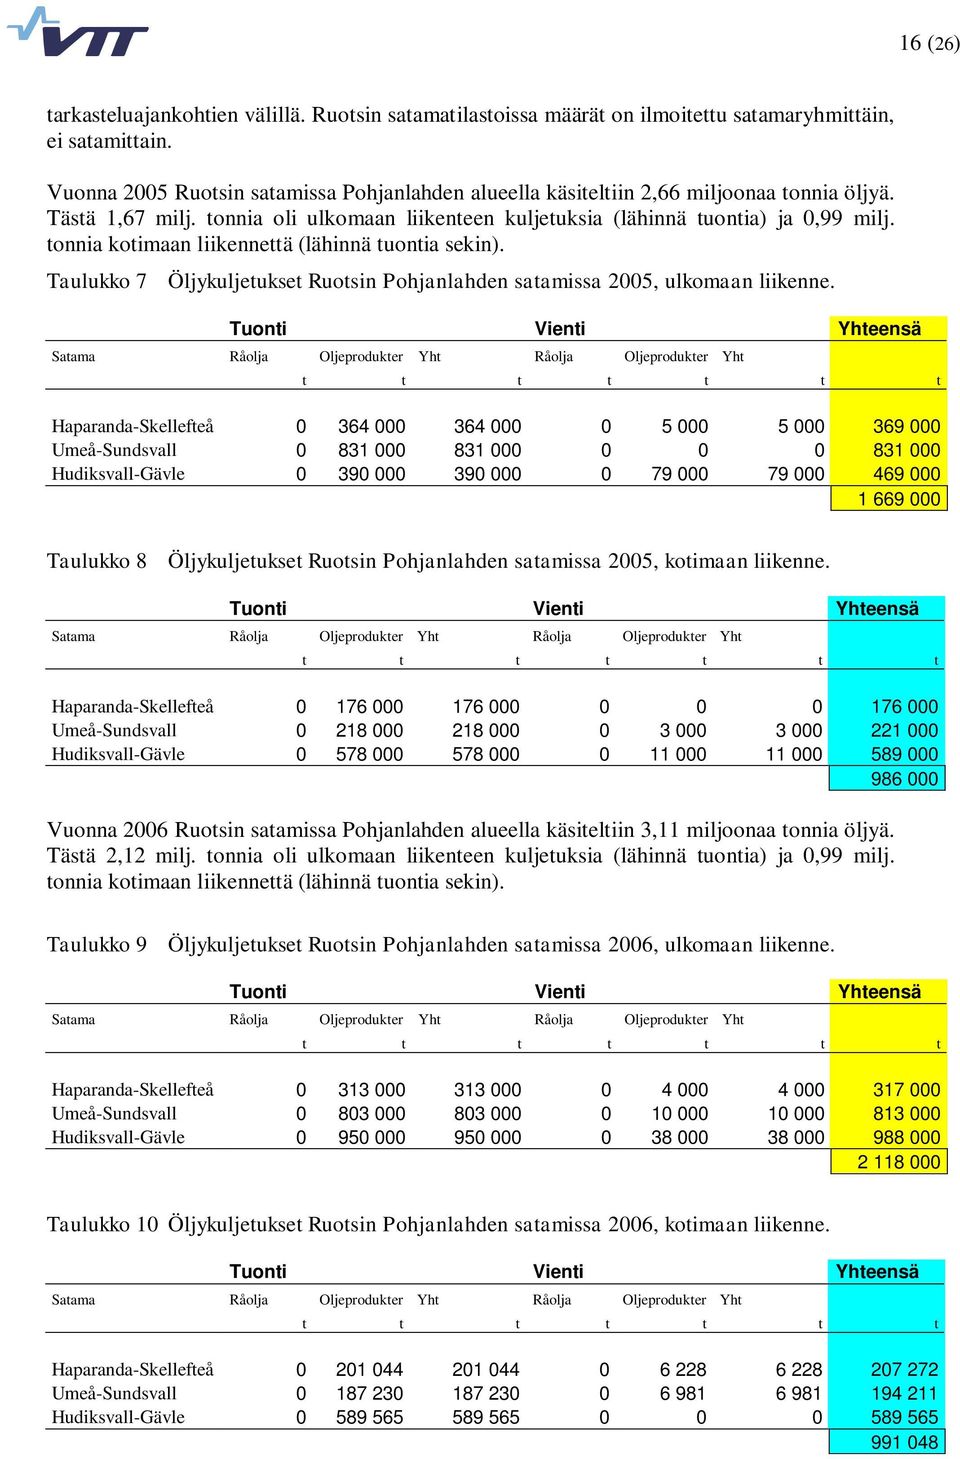 tonnia kotimaan liikennettä (lähinnä tuontia sekin). Taulukko 7 Öljykuljetukset Ruotsin Pohjanlahden satamissa 2005, ulkomaan liikenne.